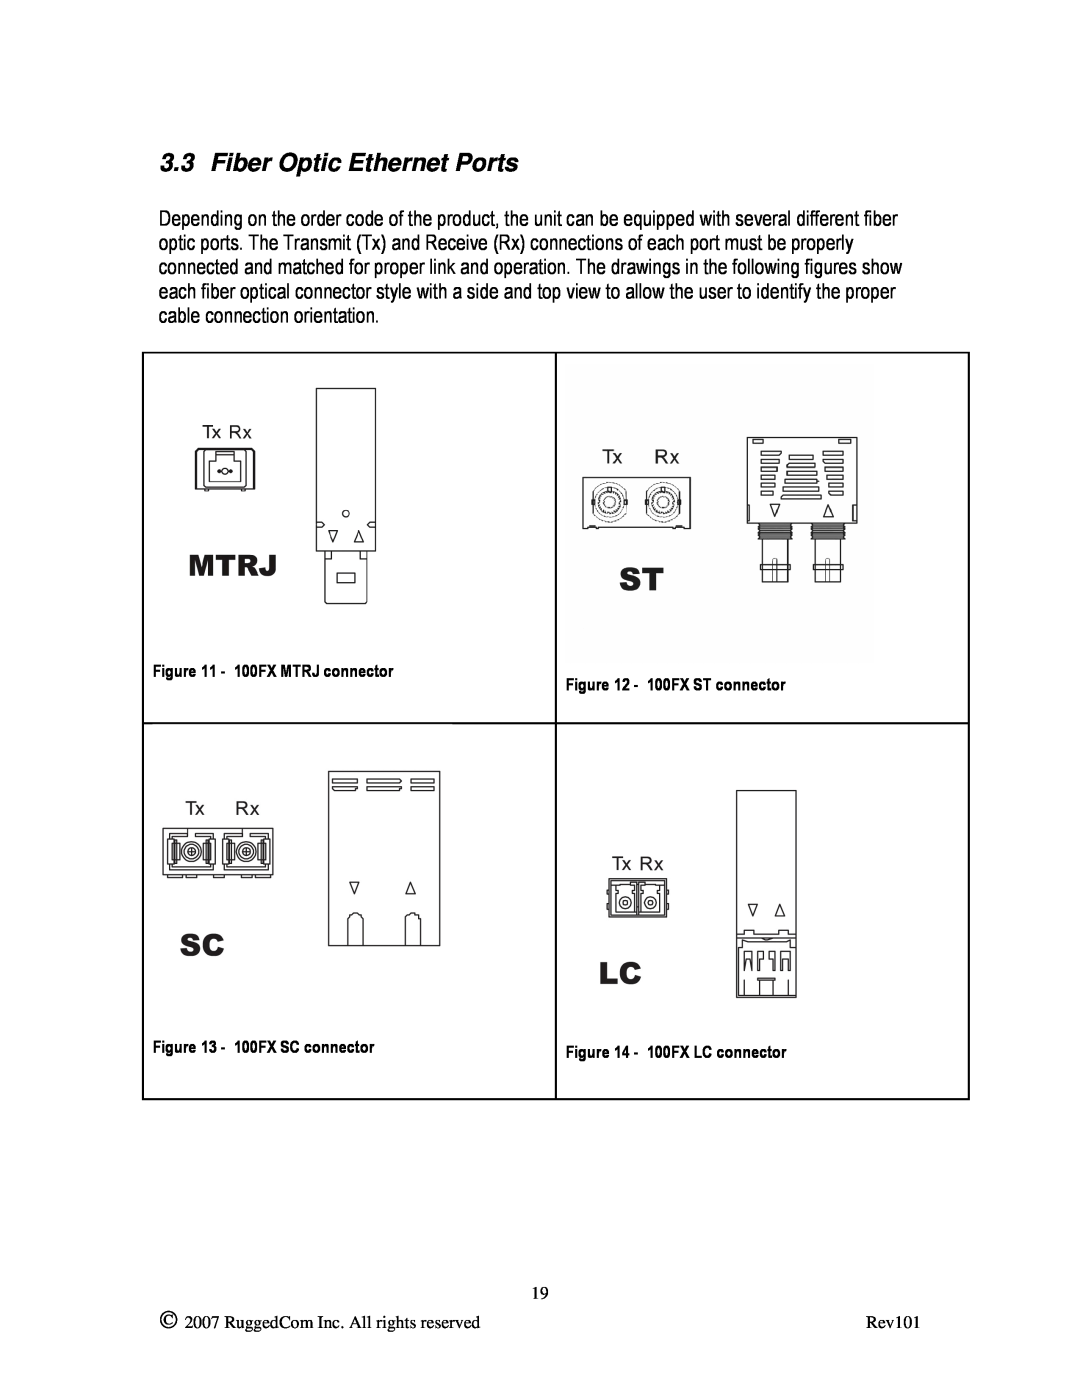 RuggedCom RS900L manual Fiber Optic Ethernet Ports, 100FX MTRJ connector - 100FX ST connector, 100FX SC connector 